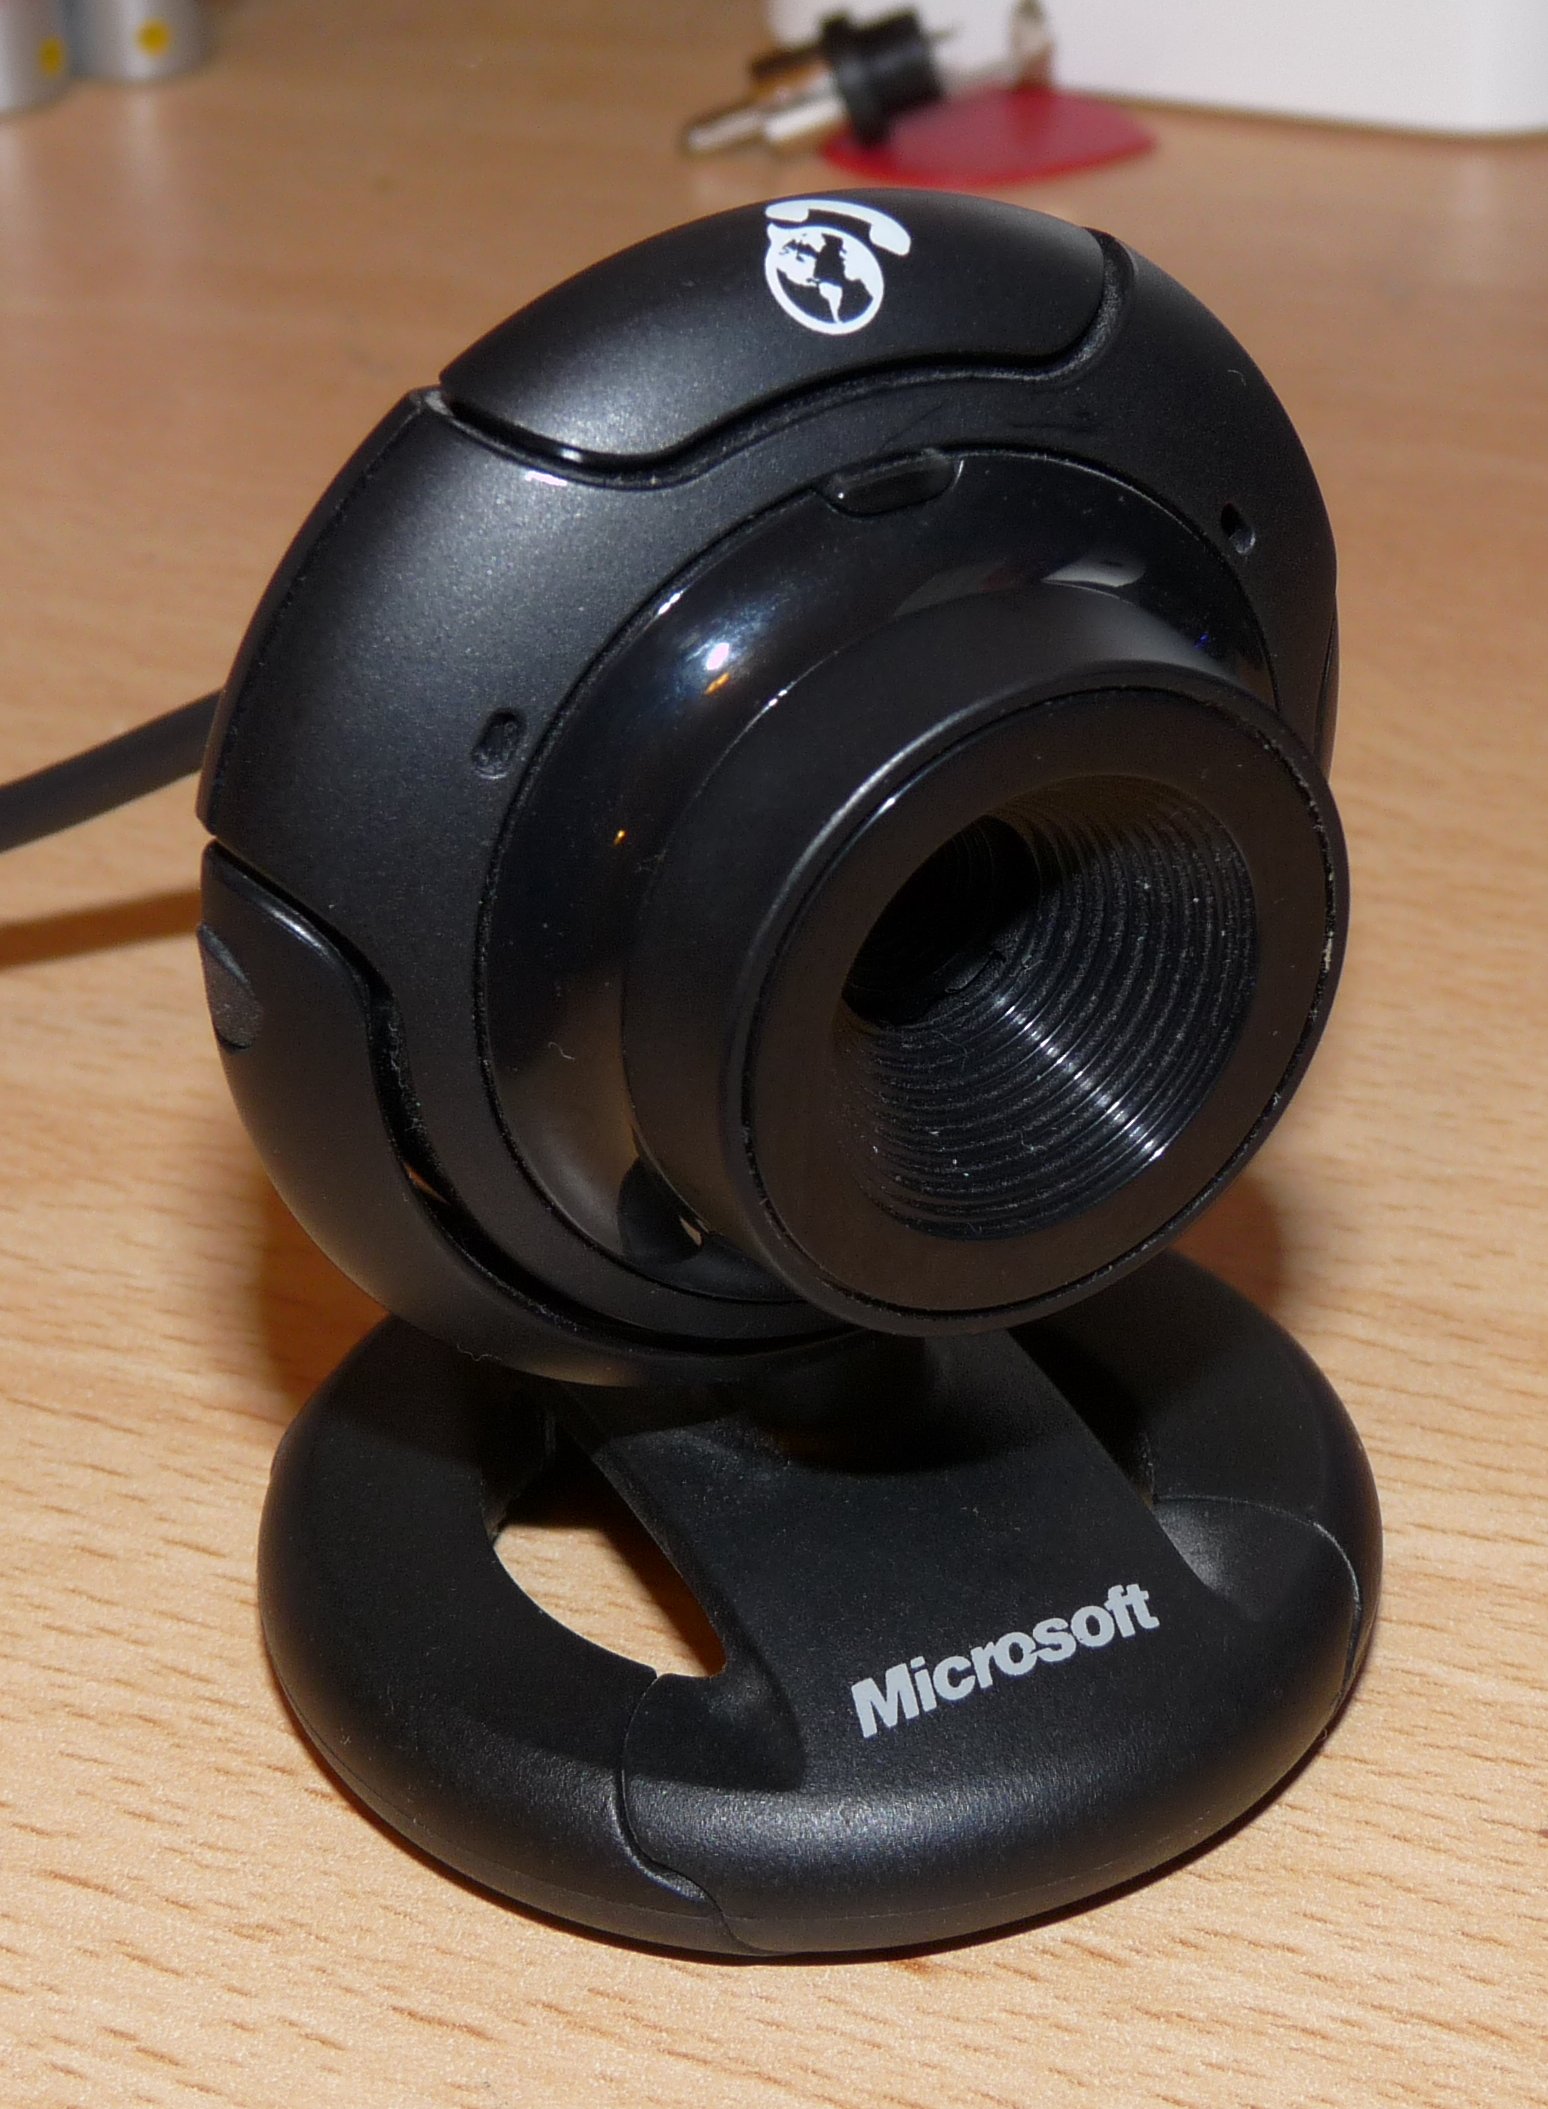 Камера microsoft lifecam vx 1000 скачать драйвер